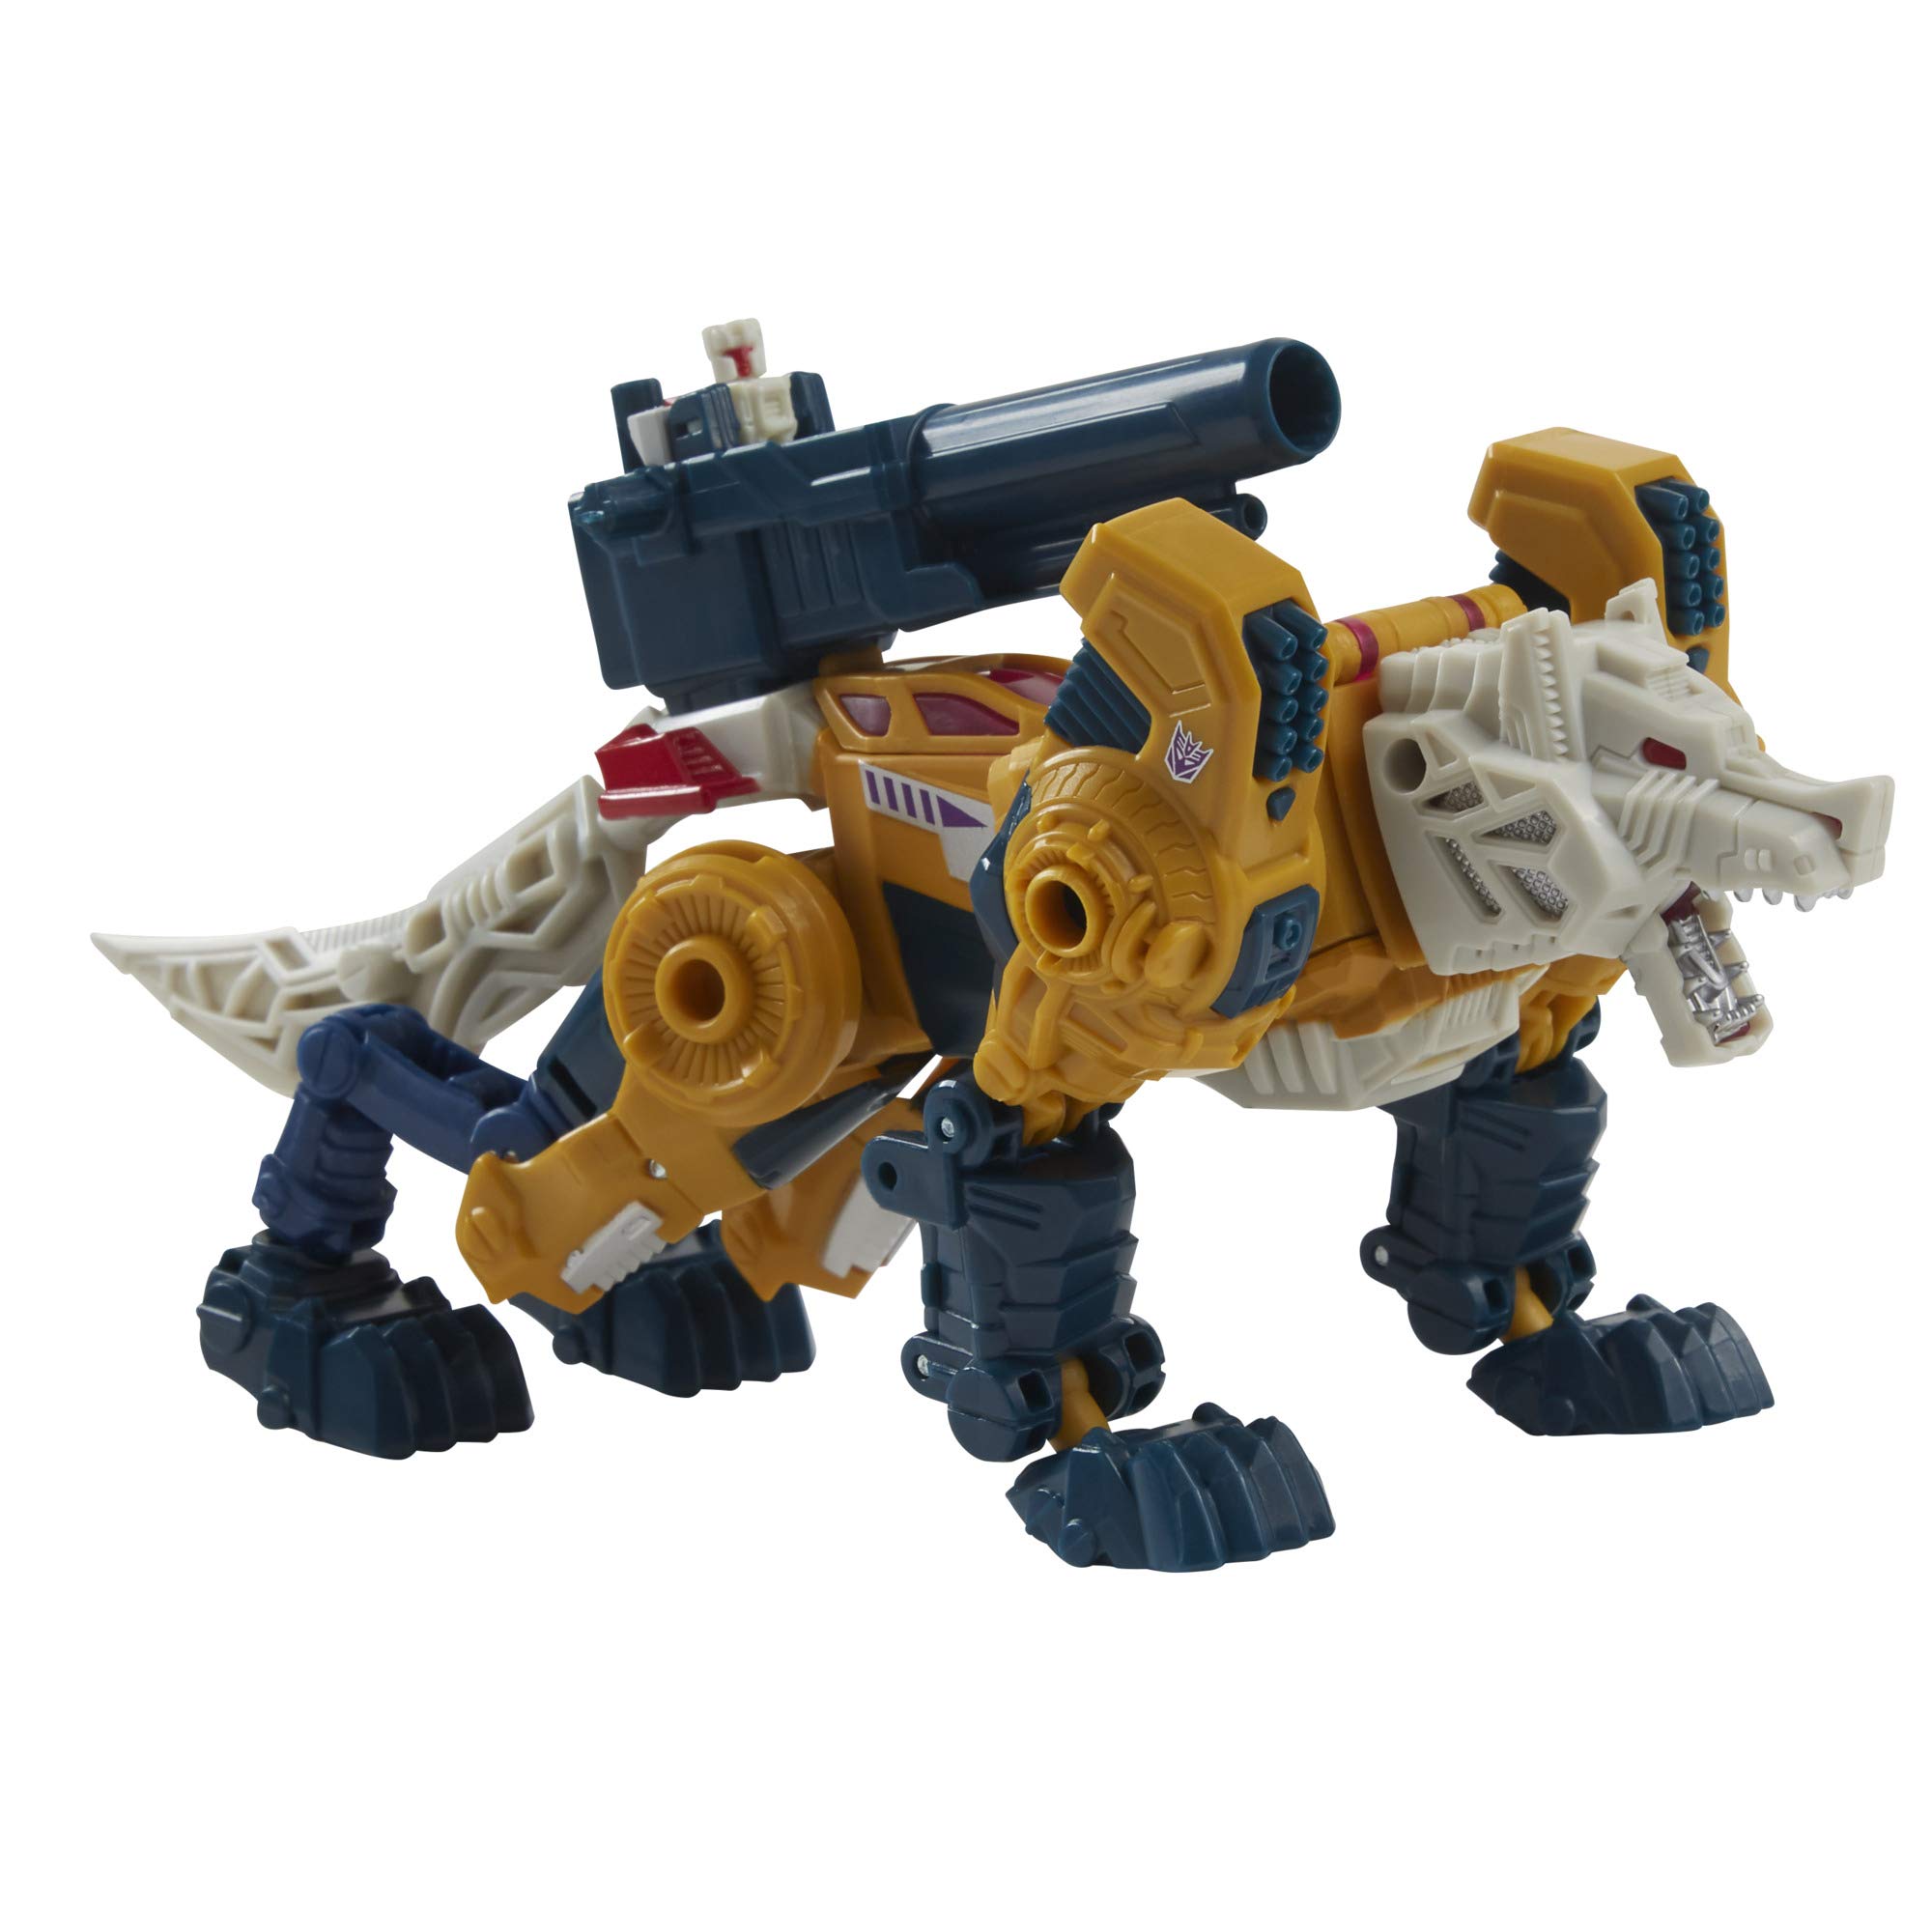 Transformers 2021 Modern Figure in Retro Packaging Decepticon Headmaster Weirdwolf with Monxo